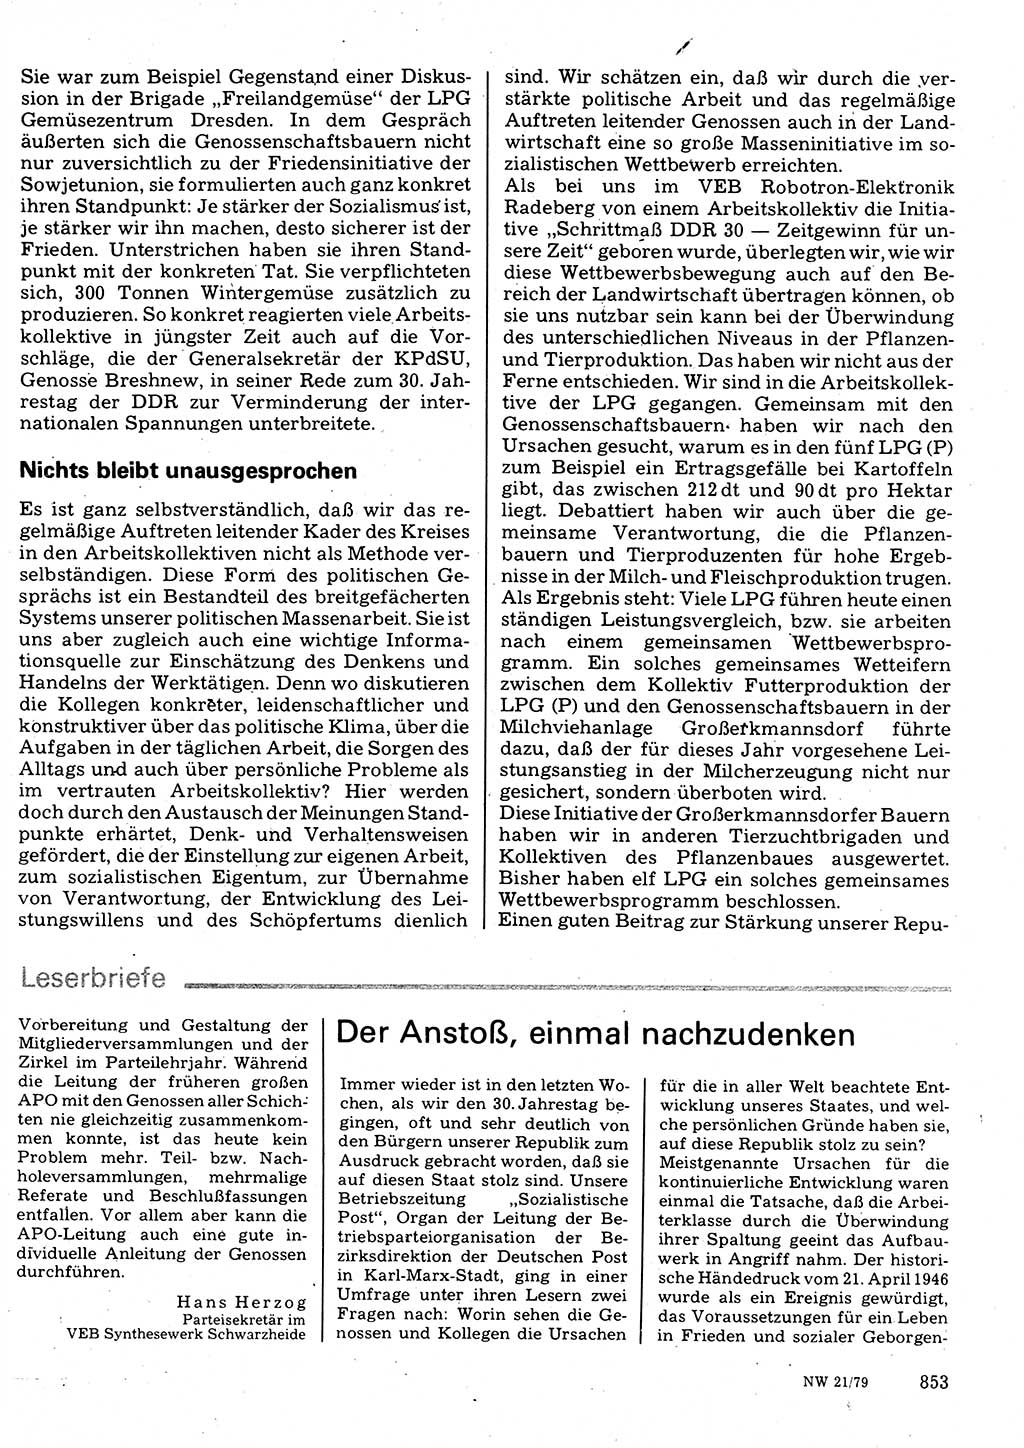 Neuer Weg (NW), Organ des Zentralkomitees (ZK) der SED (Sozialistische Einheitspartei Deutschlands) für Fragen des Parteilebens, 34. Jahrgang [Deutsche Demokratische Republik (DDR)] 1979, Seite 853 (NW ZK SED DDR 1979, S. 853)